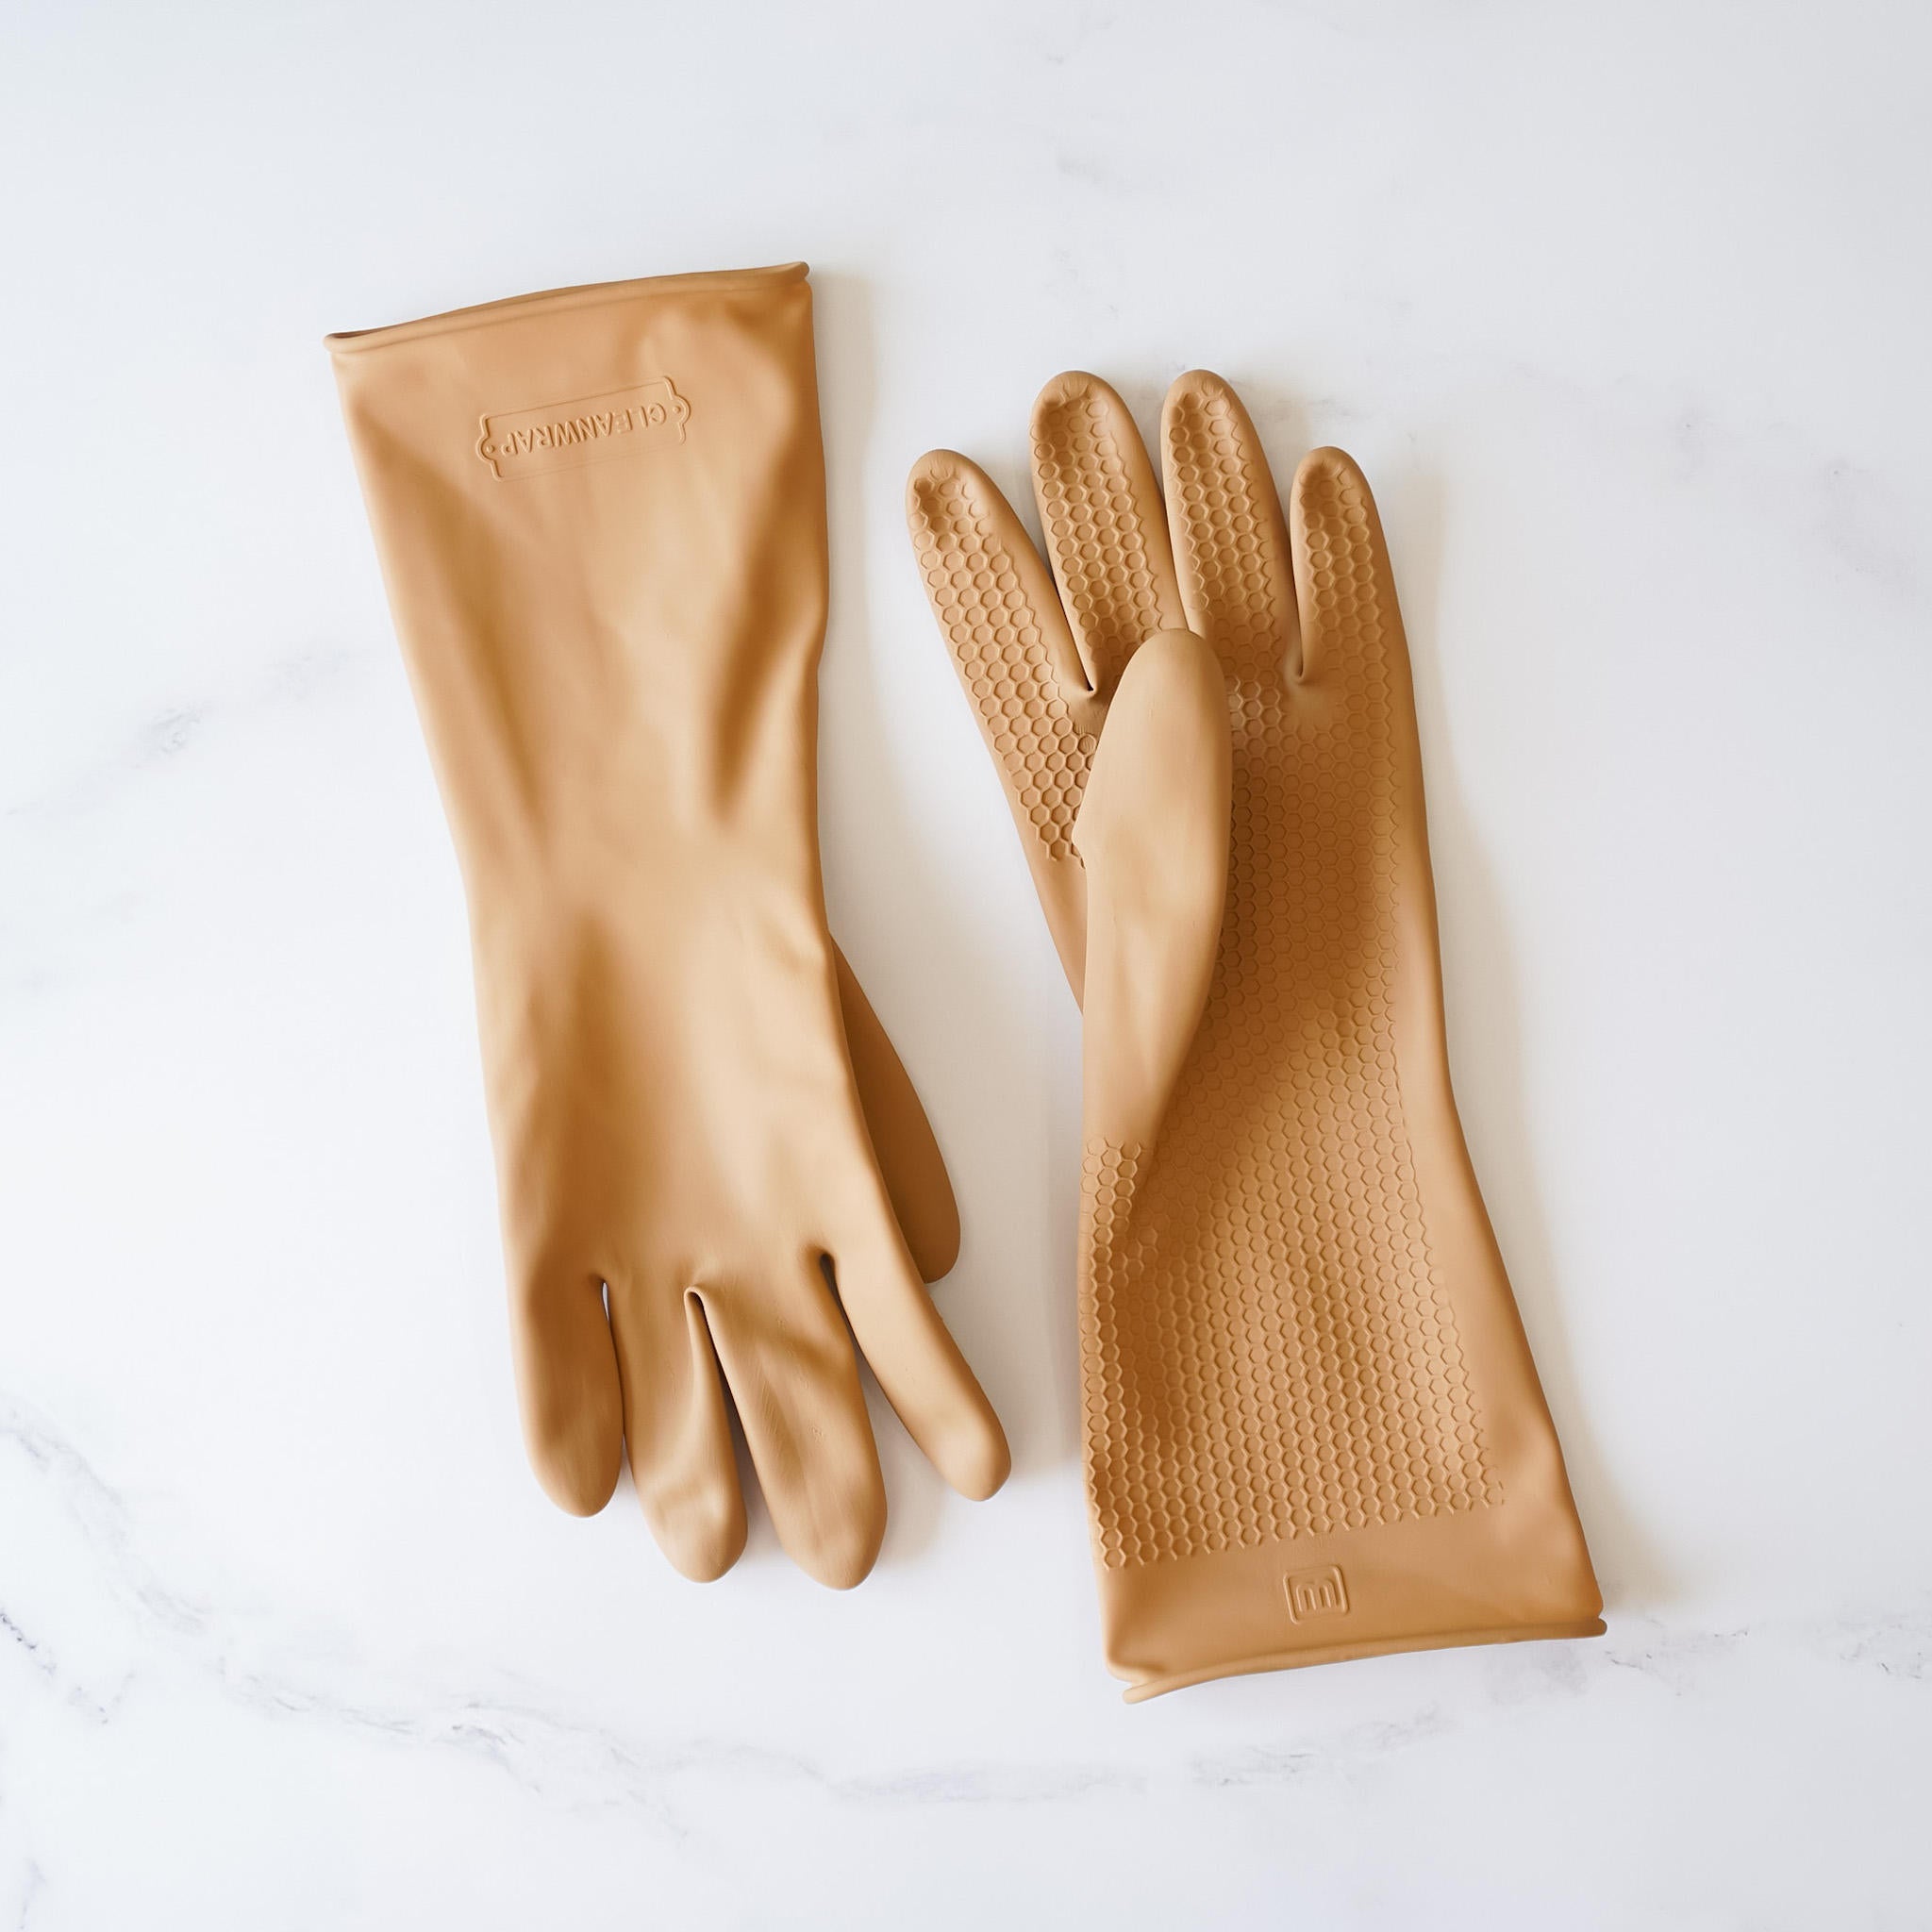 dishwashing gloves in beige